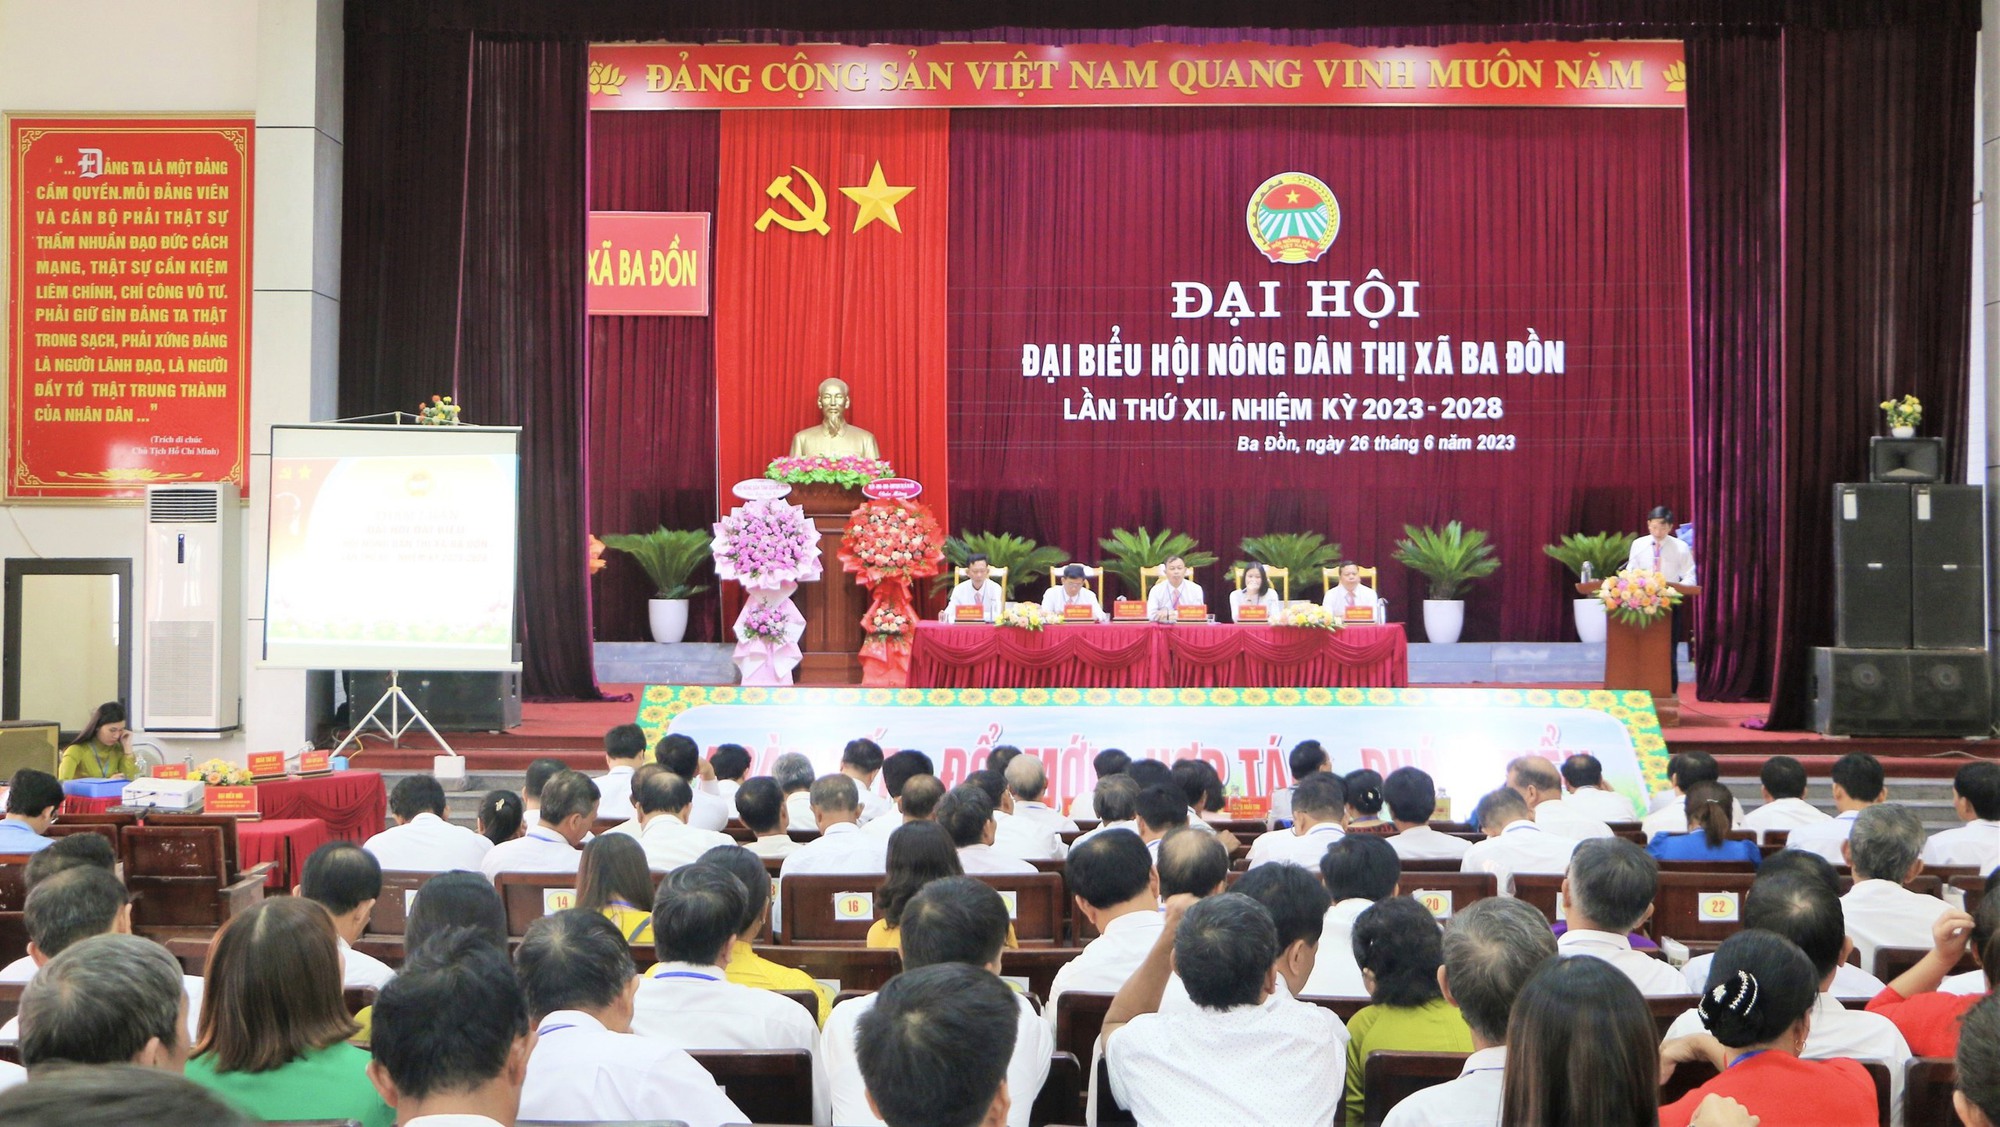 Đại hội Hội Nông dân thị xã Ba Đồn: Ông Nguyễn Quốc Đồng được bầu giữ chức Chủ tịch - Ảnh 1.